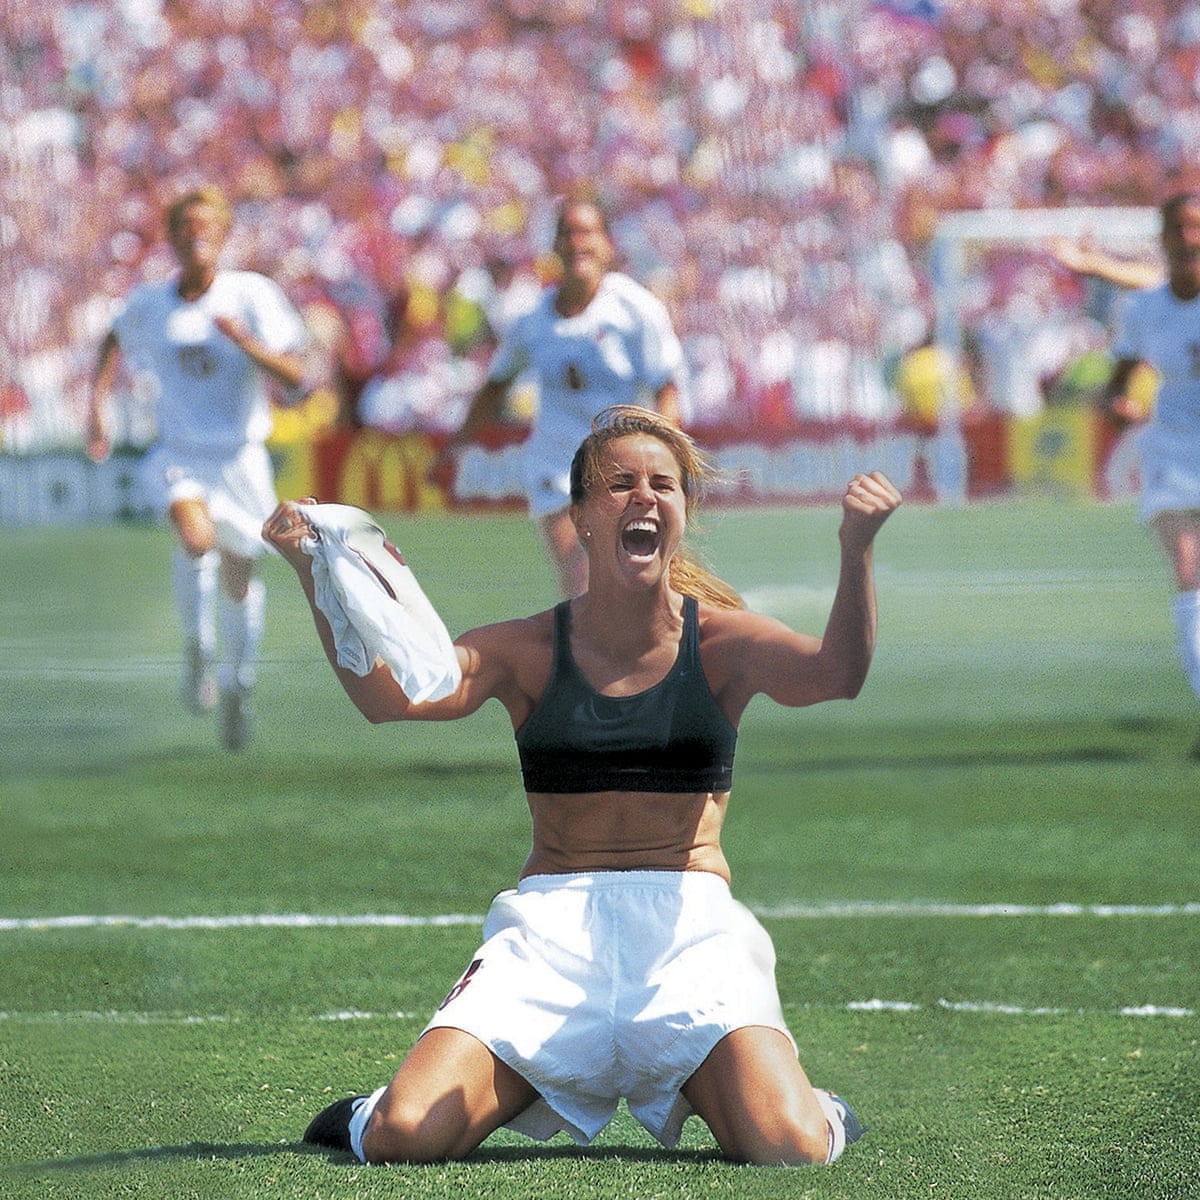 Momentos decisivos de la Copa Mundial Femenina No 4: Brandi Chastain en 1999 |  Copa del Mundo Femenina |  El guardián